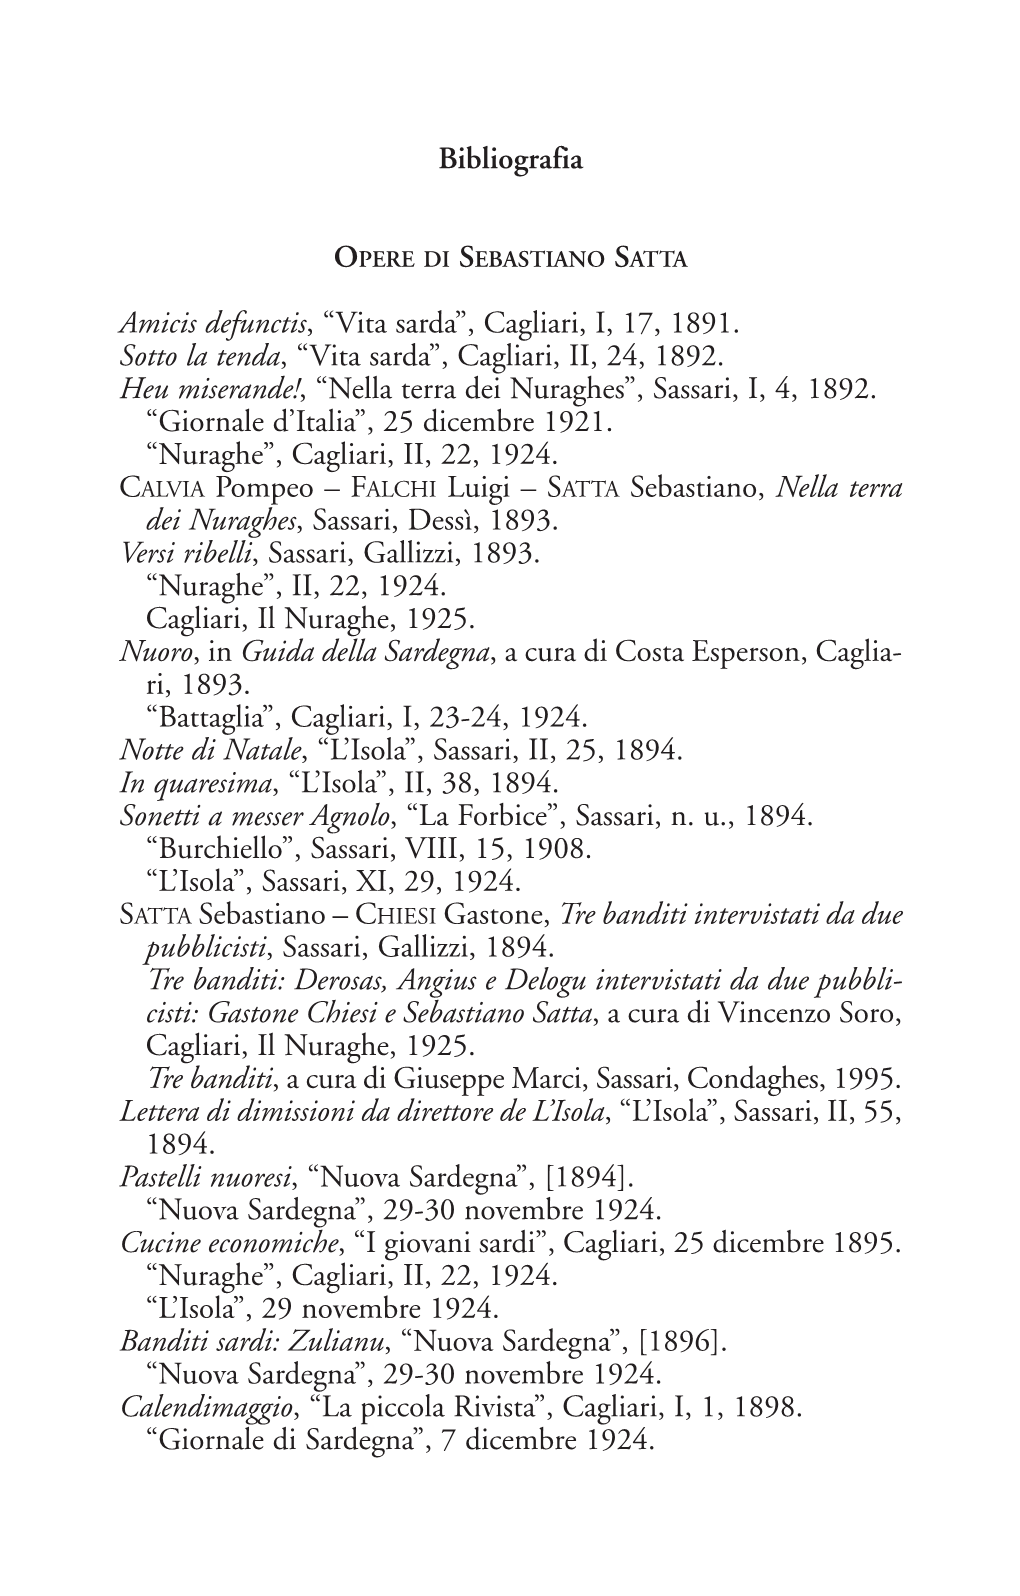 Bibliografia Amicis Defunctis, “Vita Sarda”, Cagliari, I